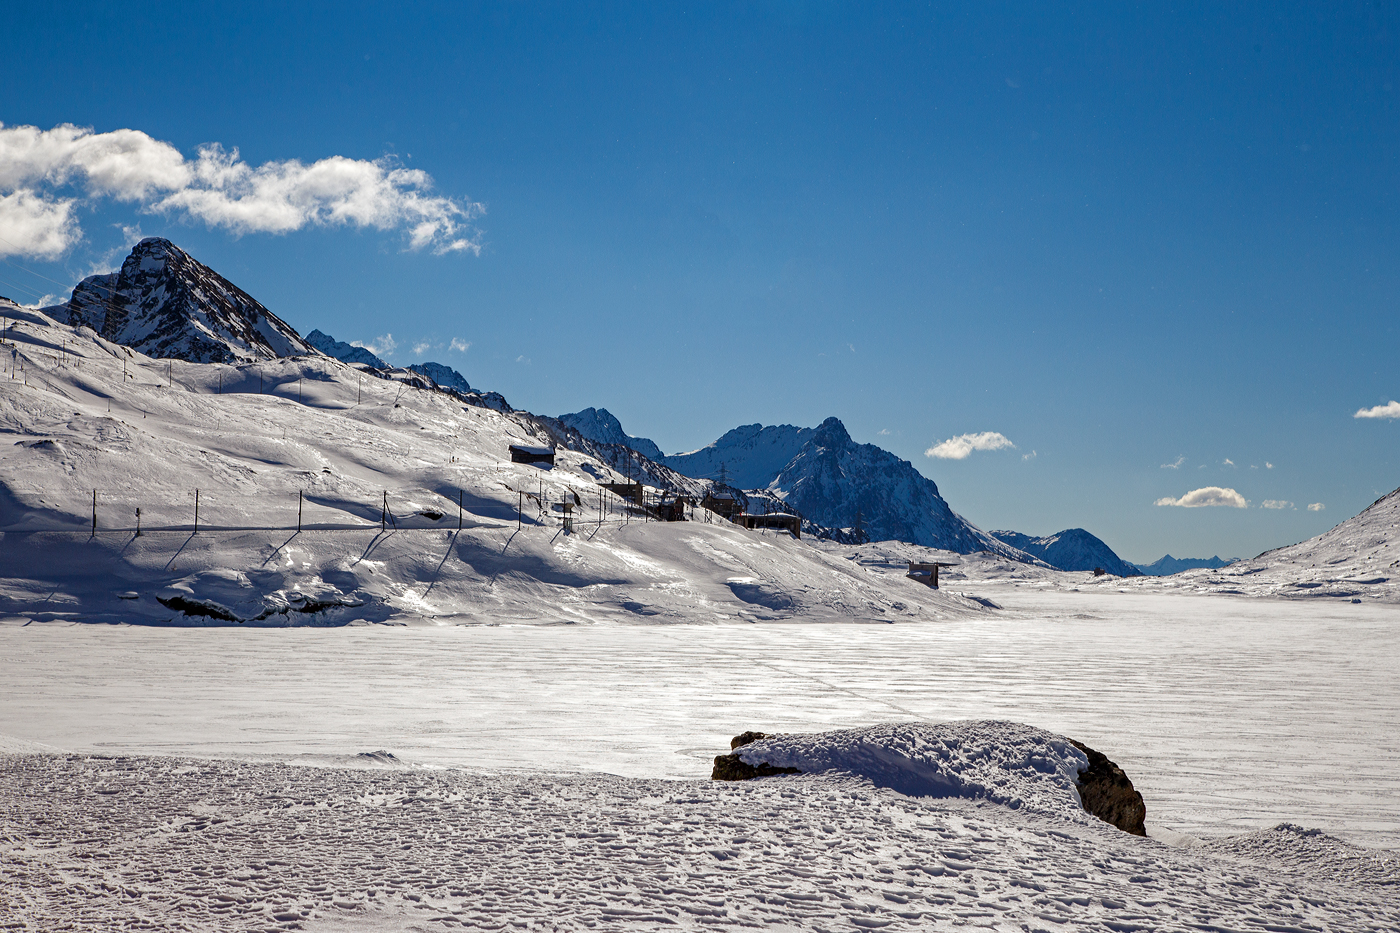 Ein winterlicher letzter Blick aus dem Bernina-Zug über den Lago Bianco hinweg auf Ospizio Bernina am 20 Februar 2017. Durch den Schnee auf dem zugefrorenen Lago Bianco ist dieser hier wahrhaft weiß. 

Der RhB Bahnhof Ospizio Bernina (Bernina-Hospiz) ist mit 2.253 m ü. M. die höchstgelegene Bahnstation im Netz der Rhätischen Bahn und damit auch die höchste Eisenbahn-Alpenüberquerung und das sogar als reine Adhäsionsbahn.
